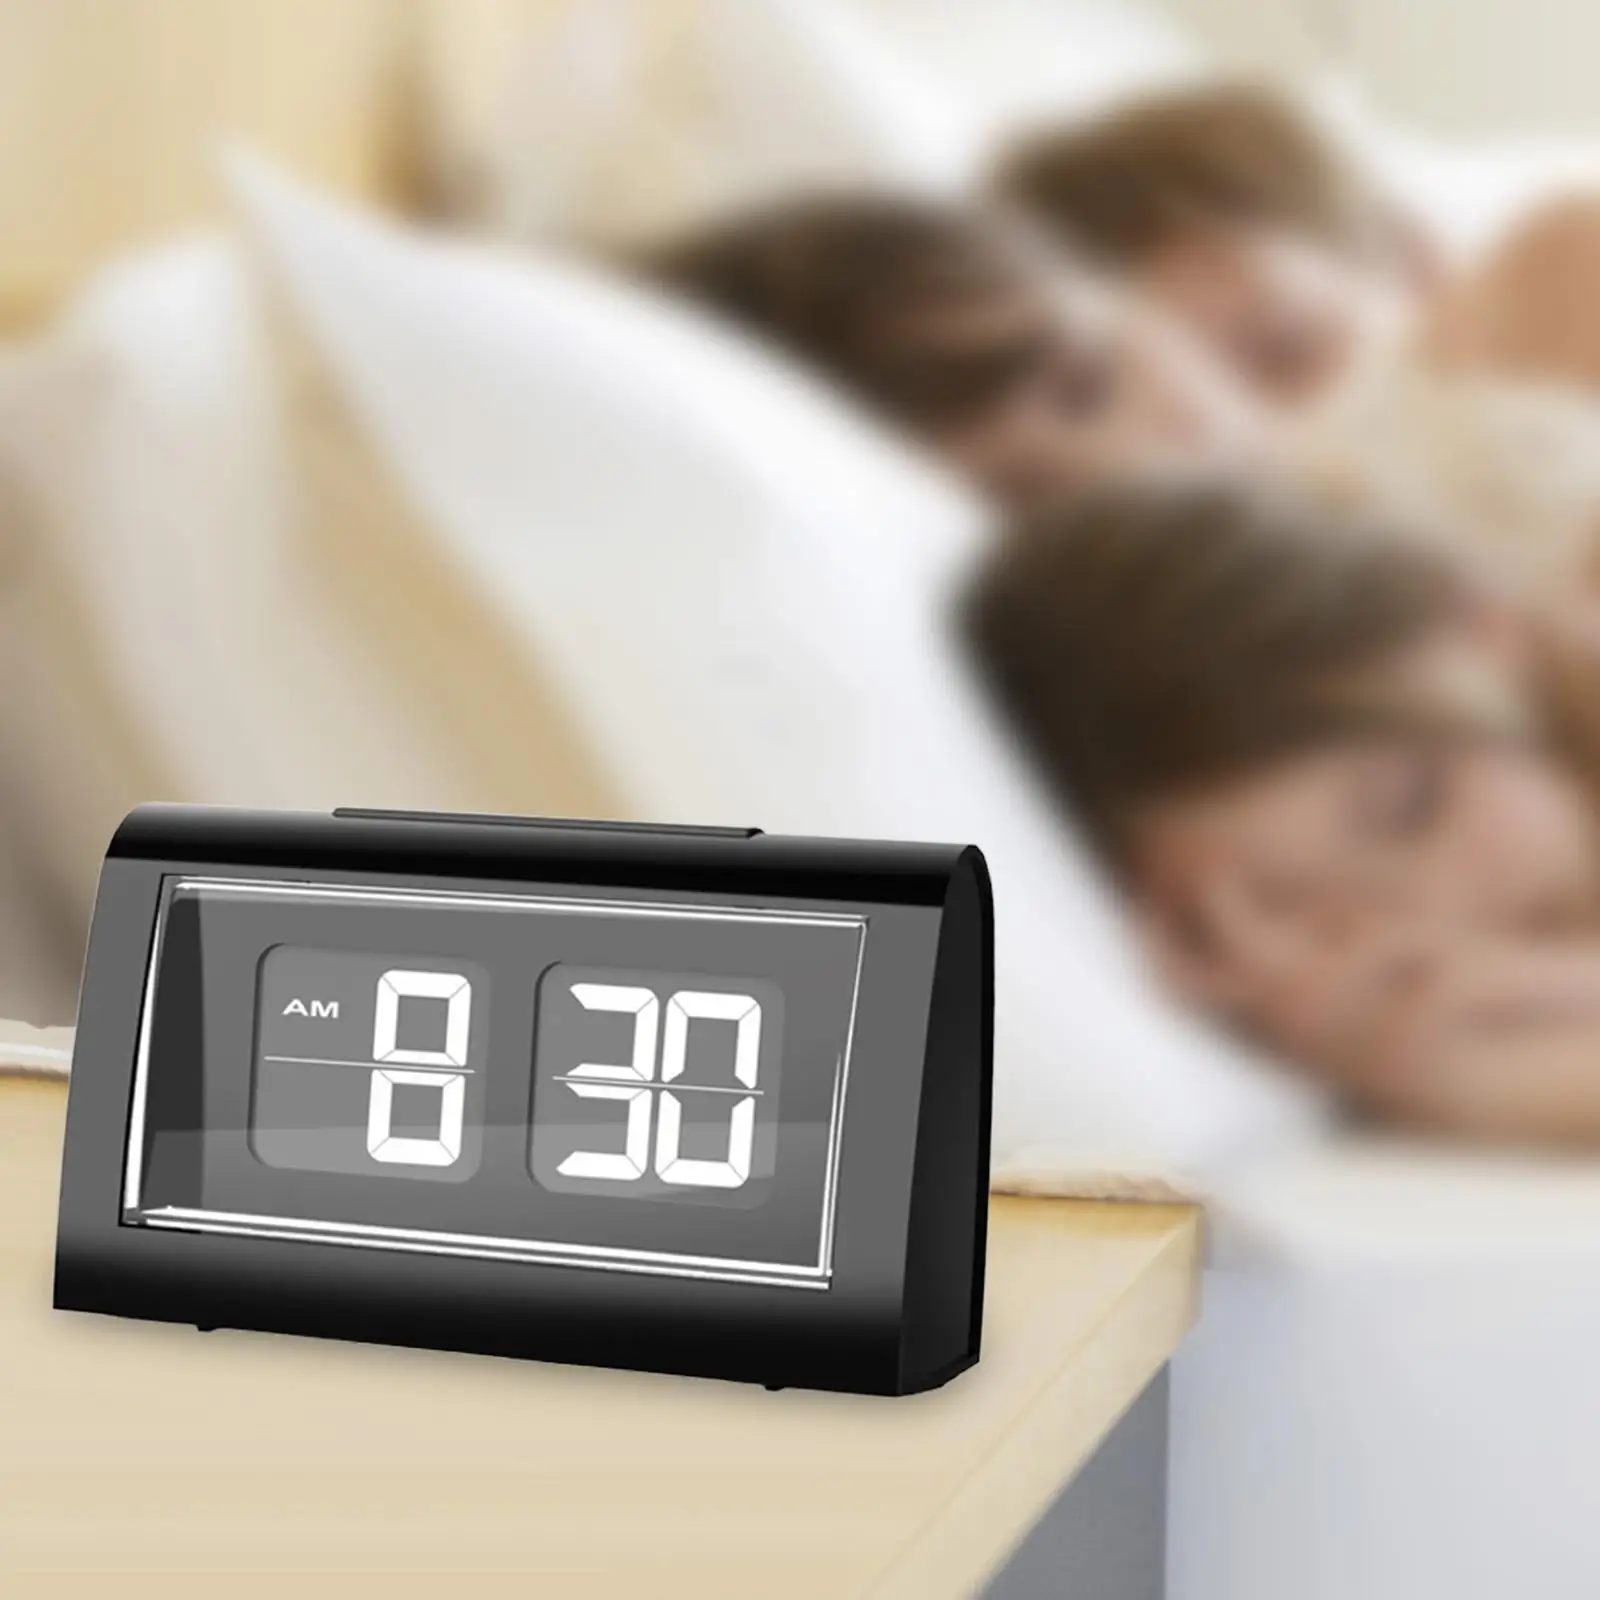 Auto Flip Digital Alarm Clock with Backlight Dining Table Flip Desk Clock